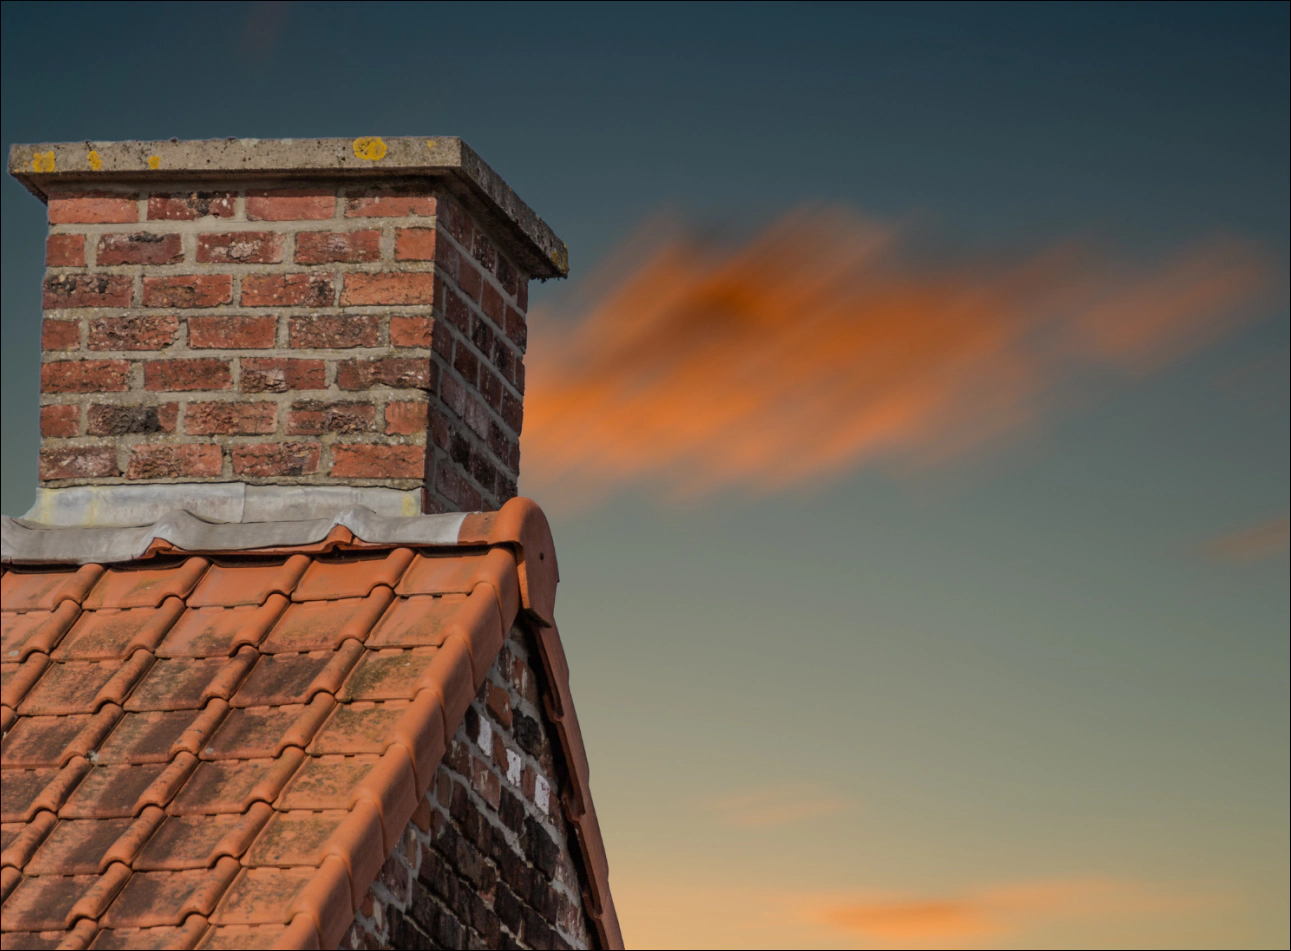 a chimney on a sunset